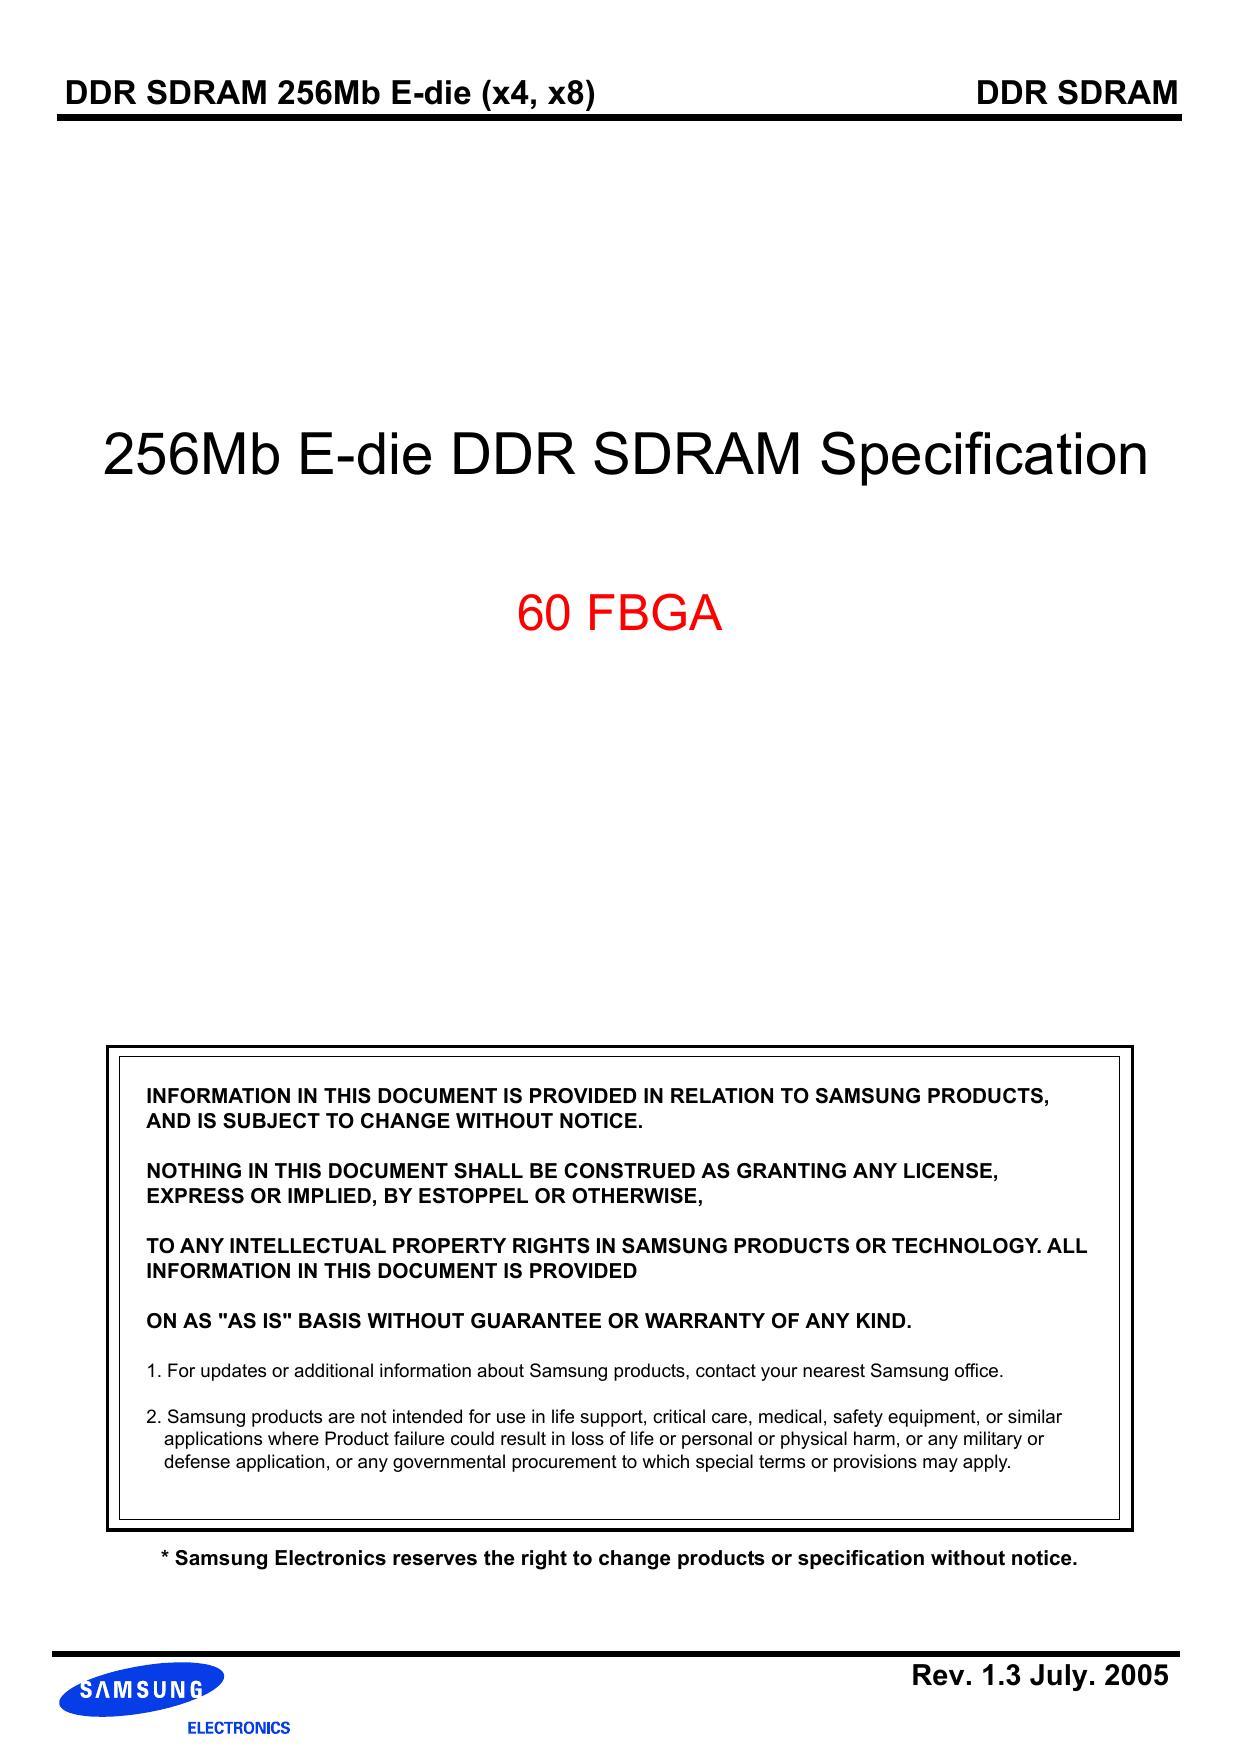 ddr-sdram-256mb-e-die-x4-x8.pdf